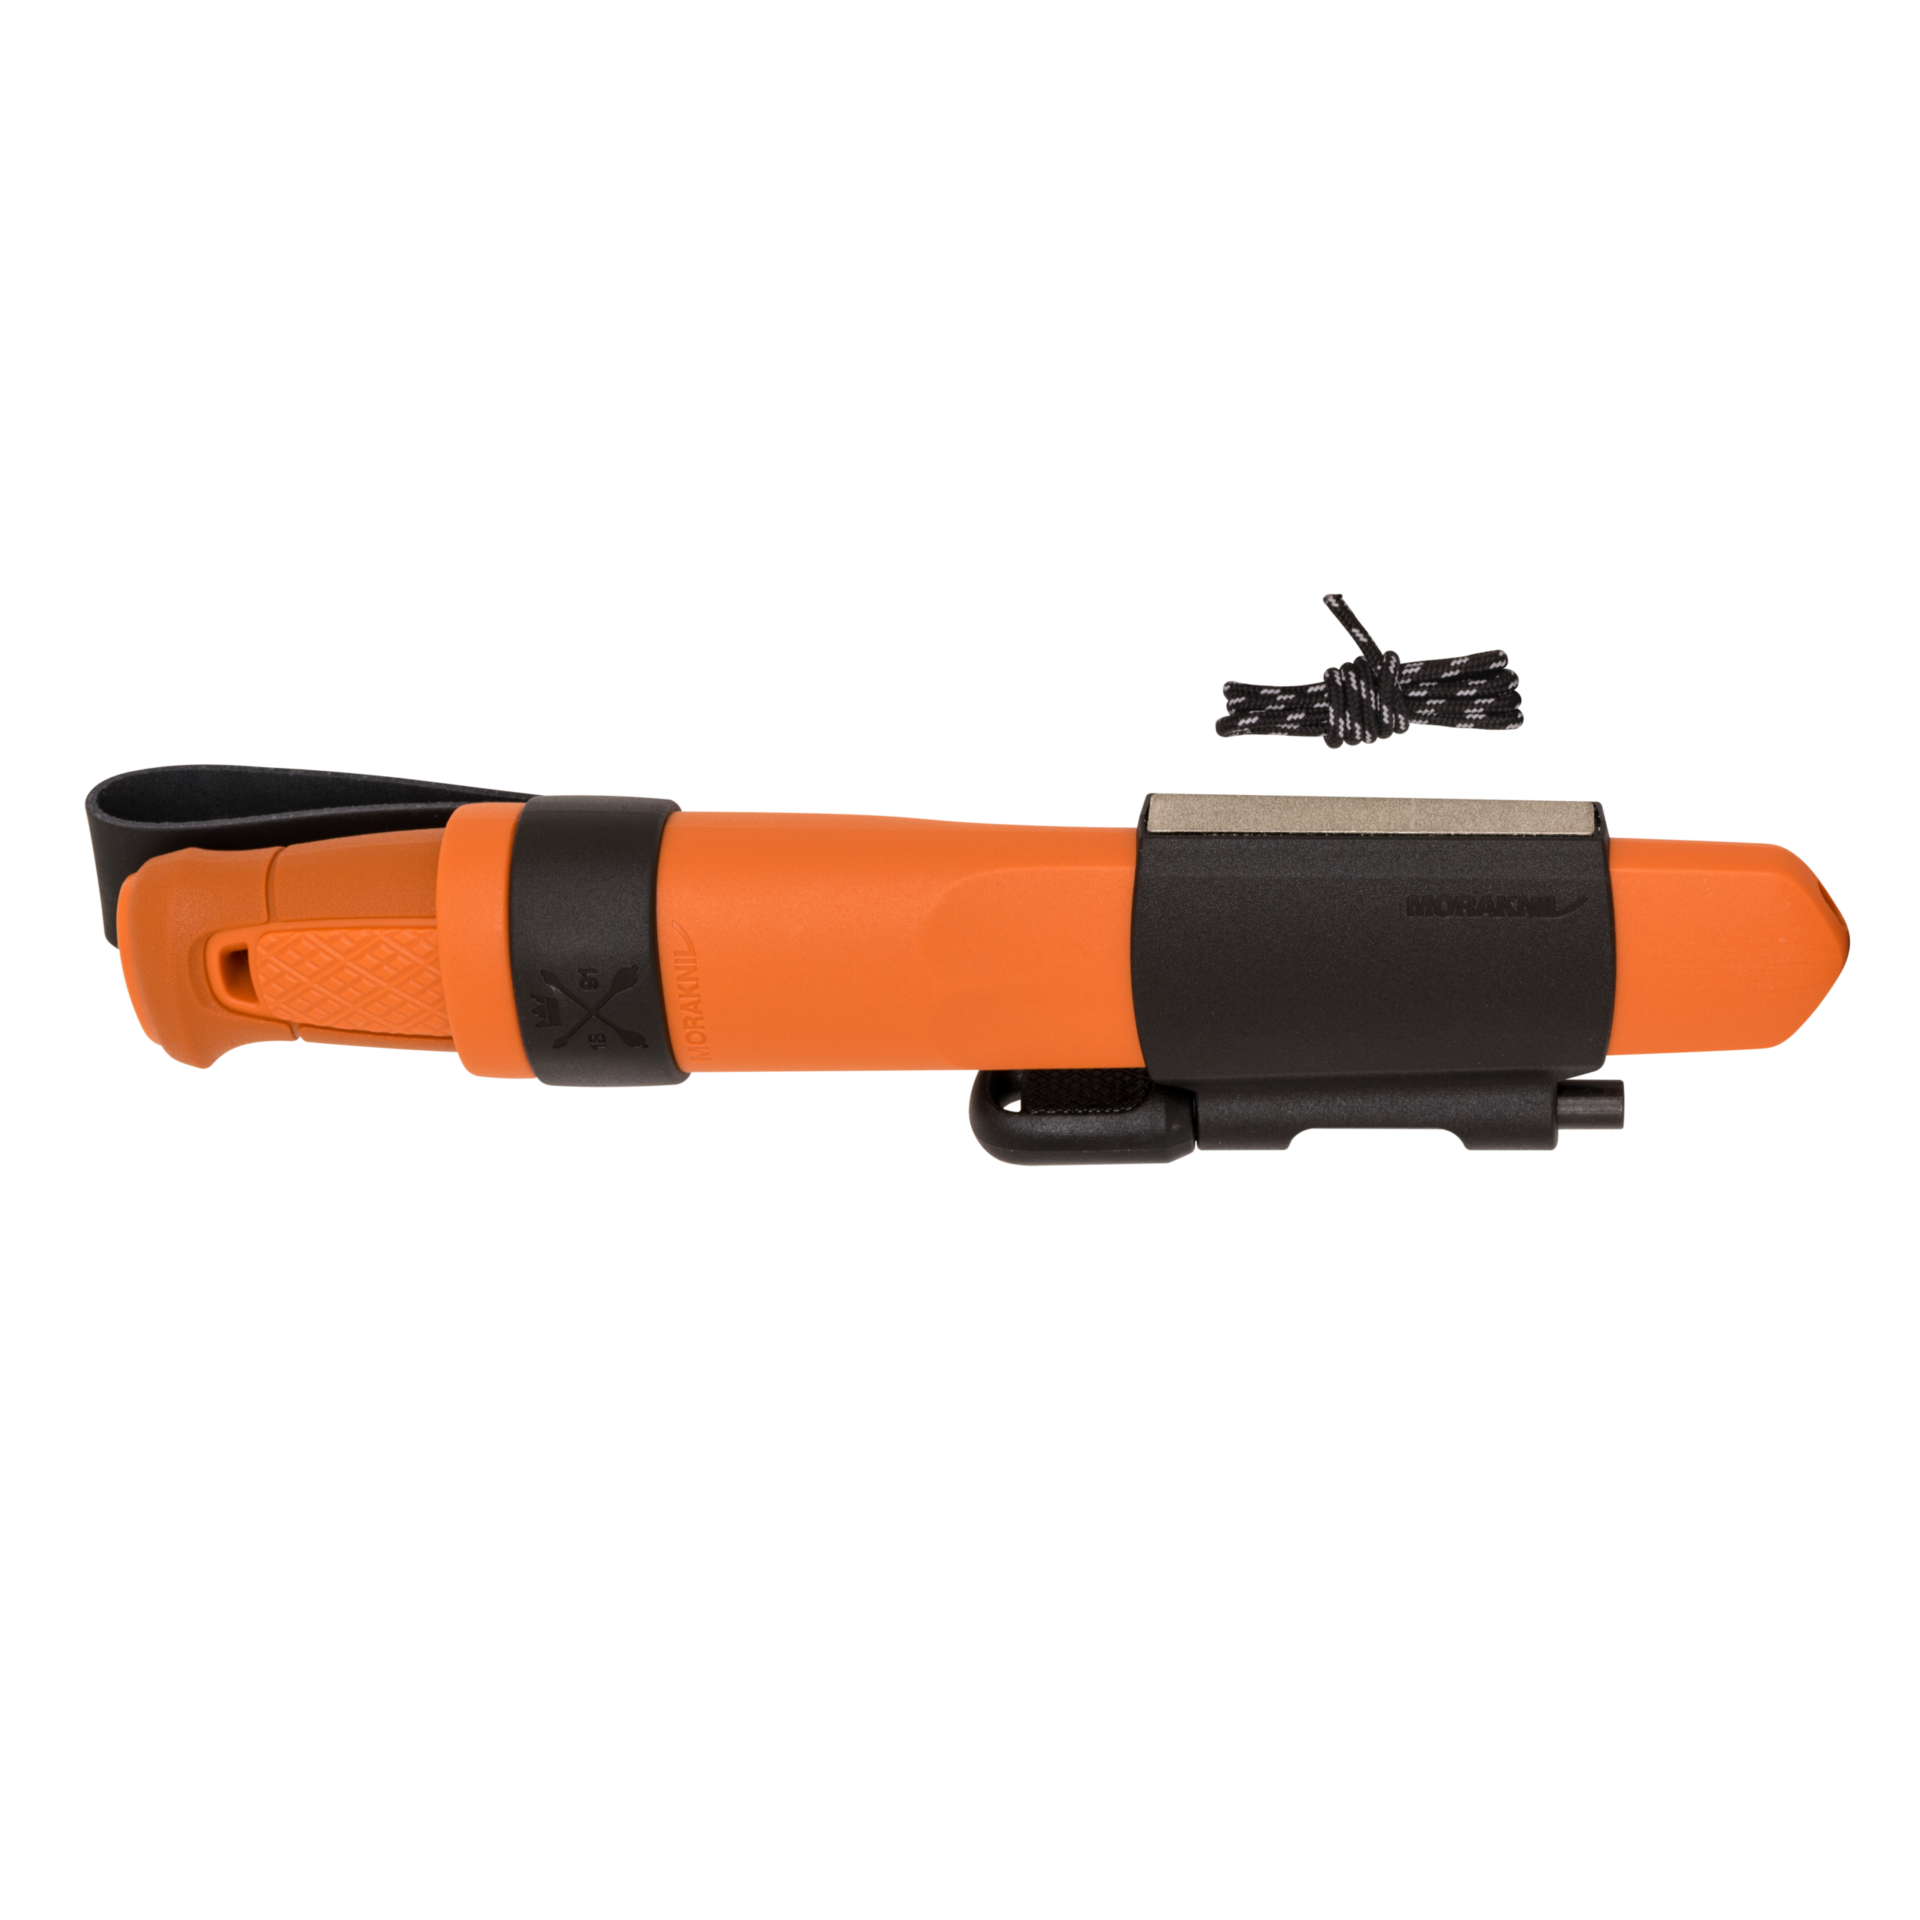 13913 Kansbol med Survival Kit S Burnt Orange kniv slida kit p02